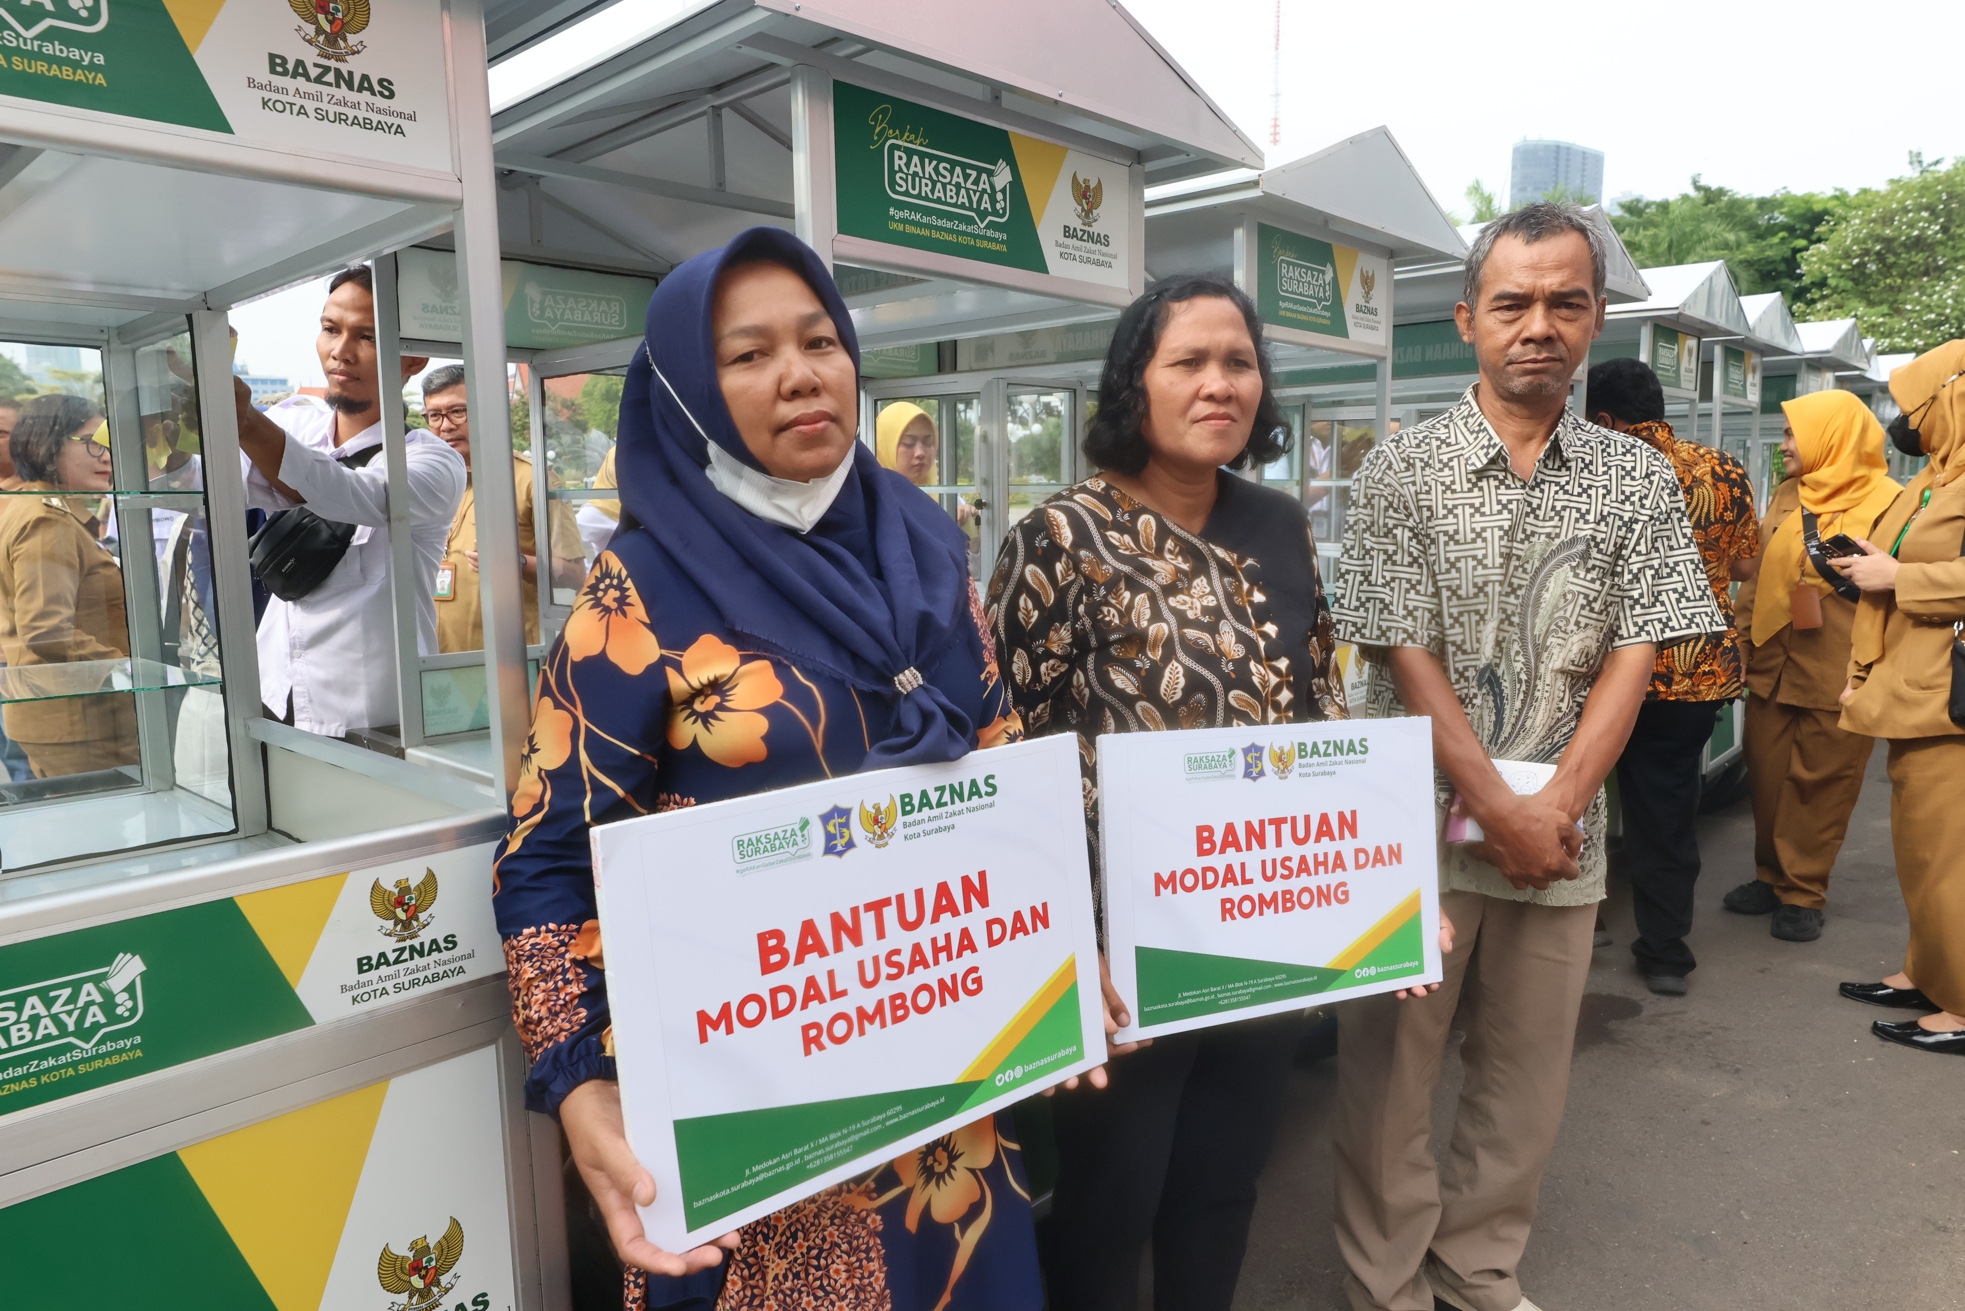 Pemkot Surabaya Beri Bantuan Modal Usaha hingga Rombong ke Pokmas dan Pertukir Kategori Keluarga Miskin